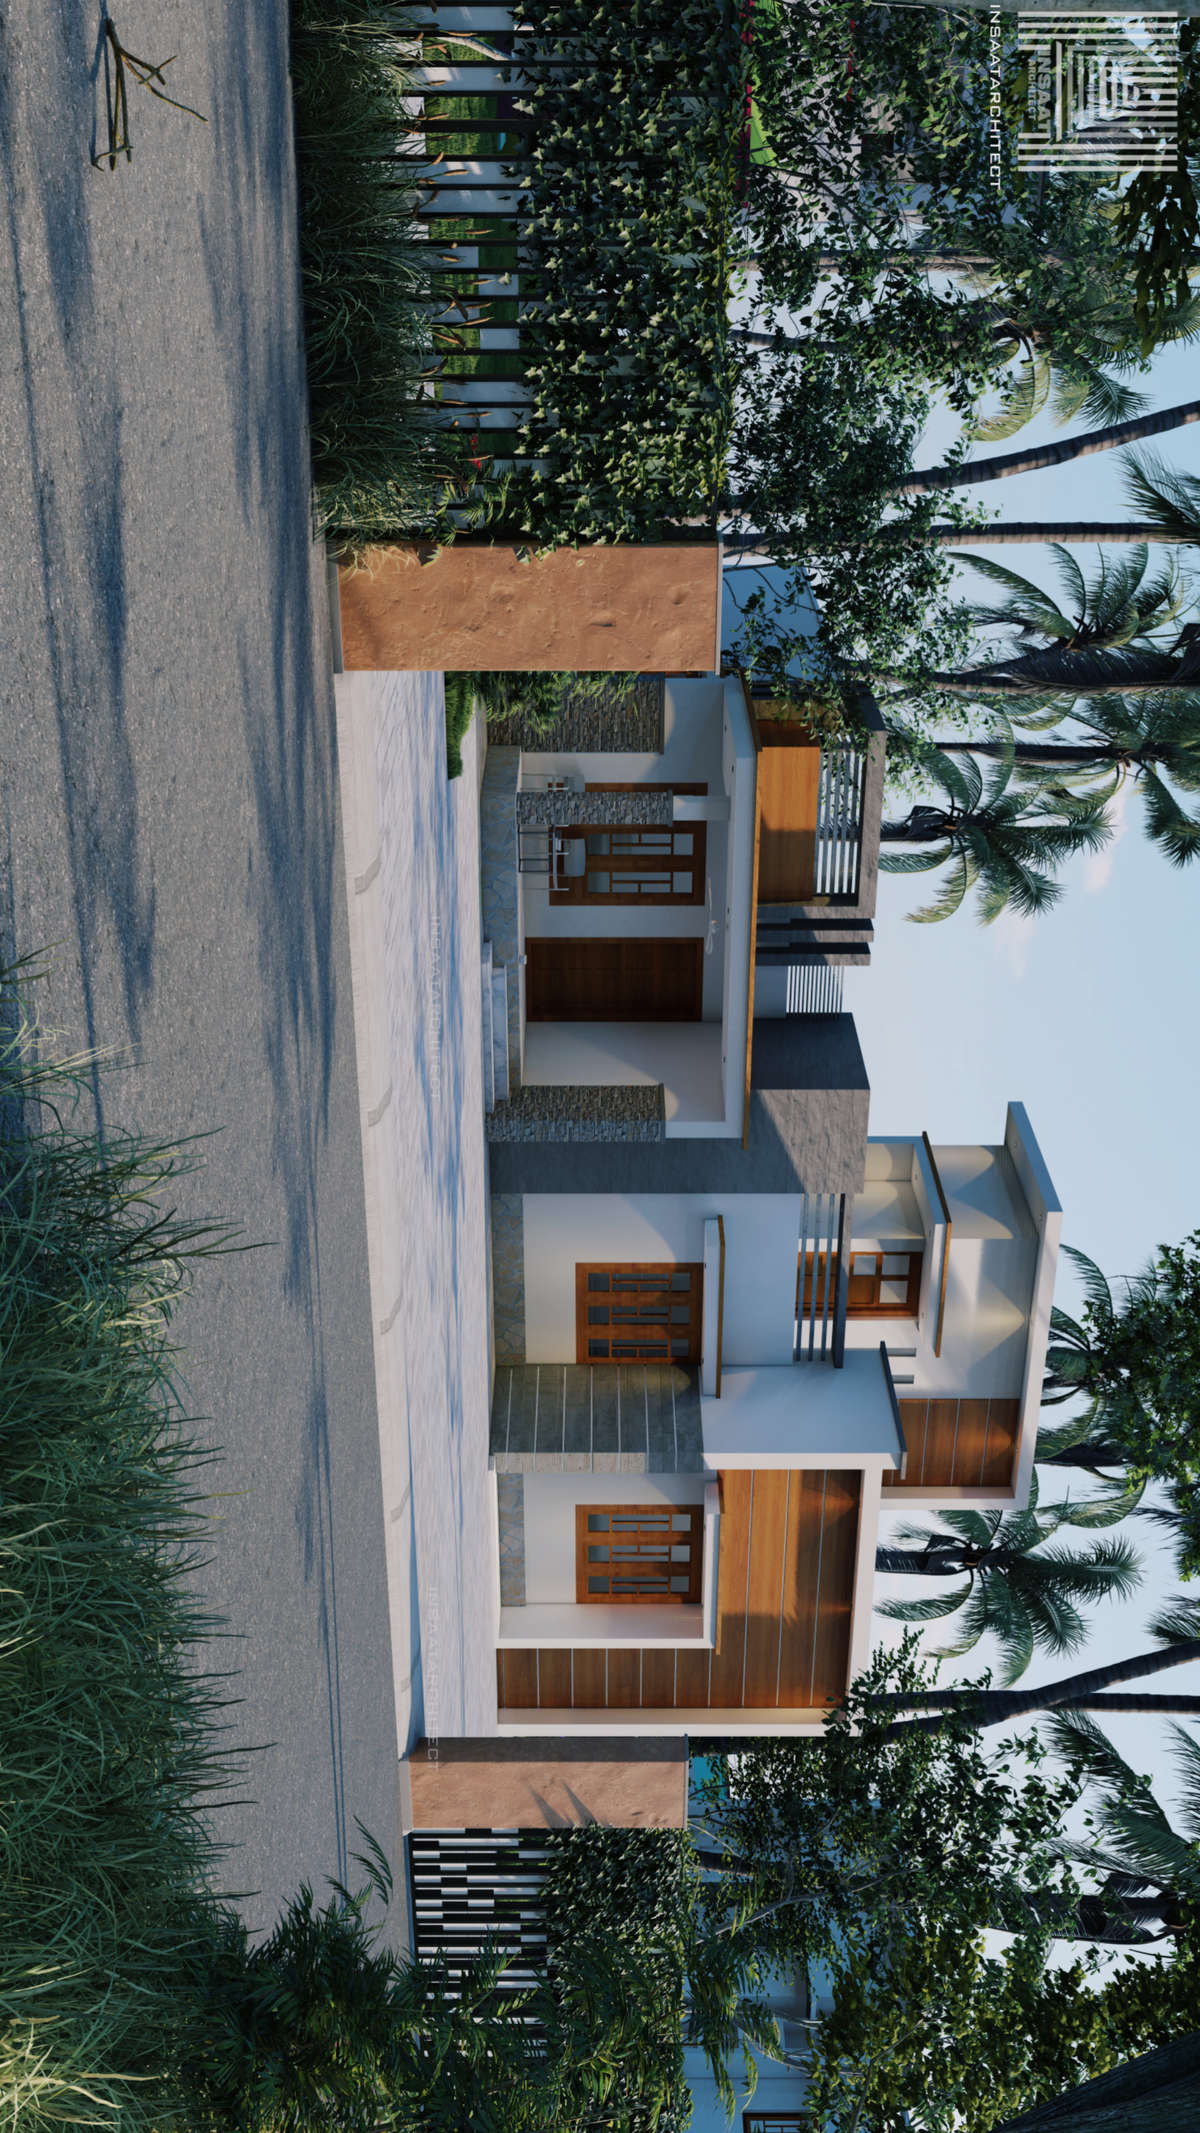 Designs by Civil Engineer sareena siraj, Kollam | Kolo